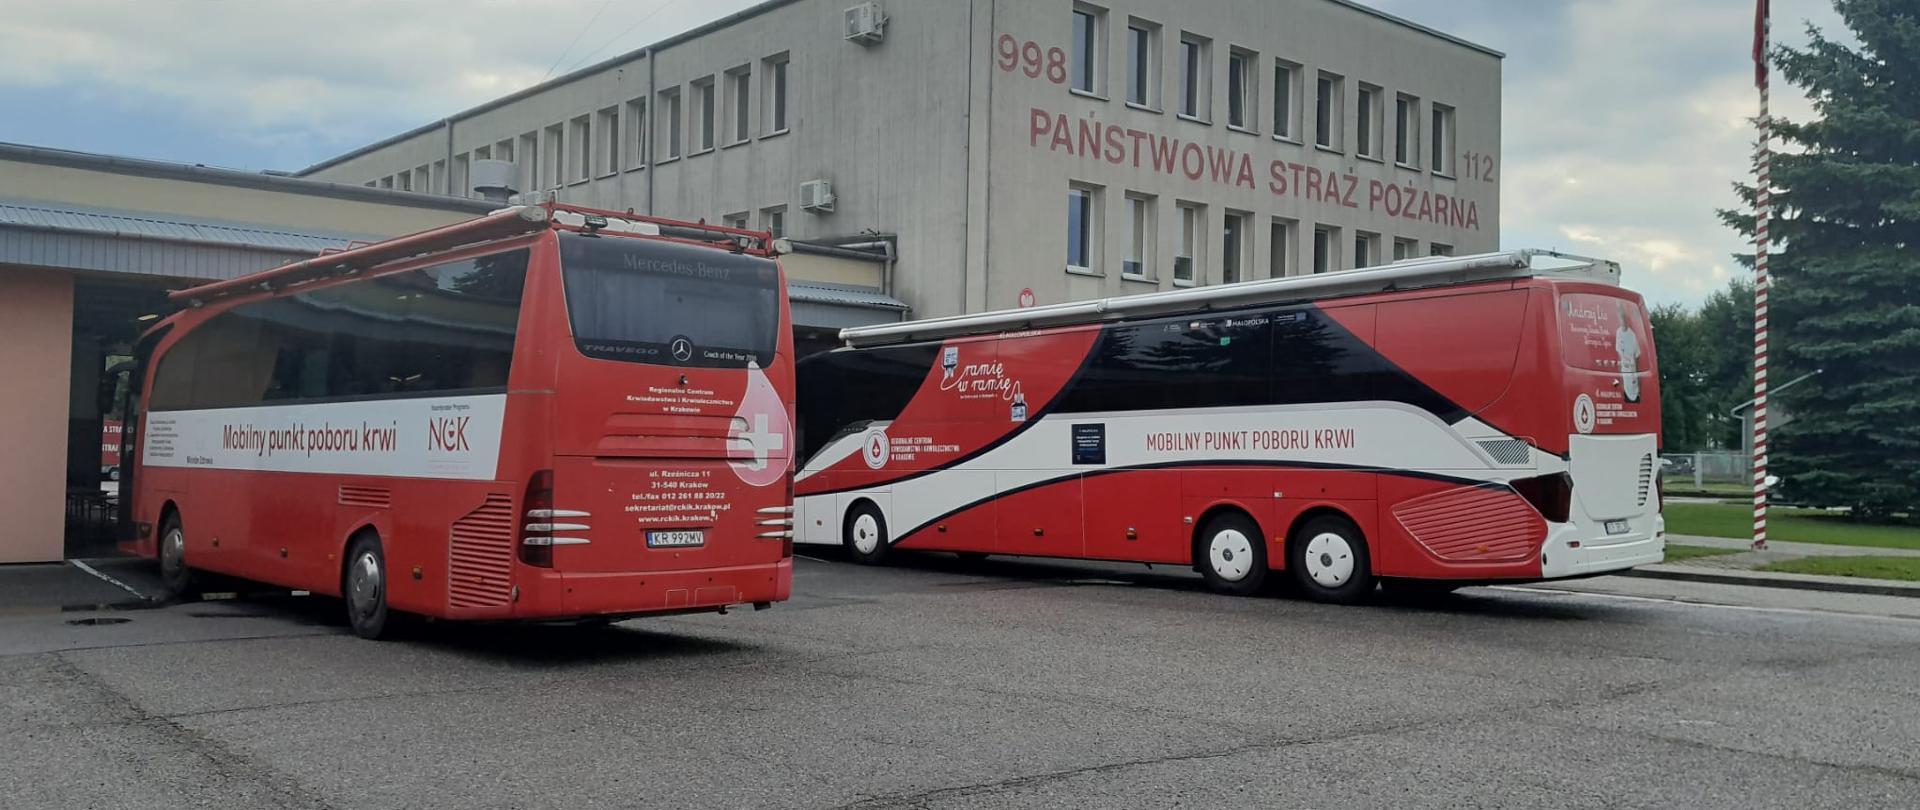 Dwa czerwone autobusy staja przed garażami JRG1. Na autobusach widnieje napis MOBILNY PUNKT POBORU KRWI